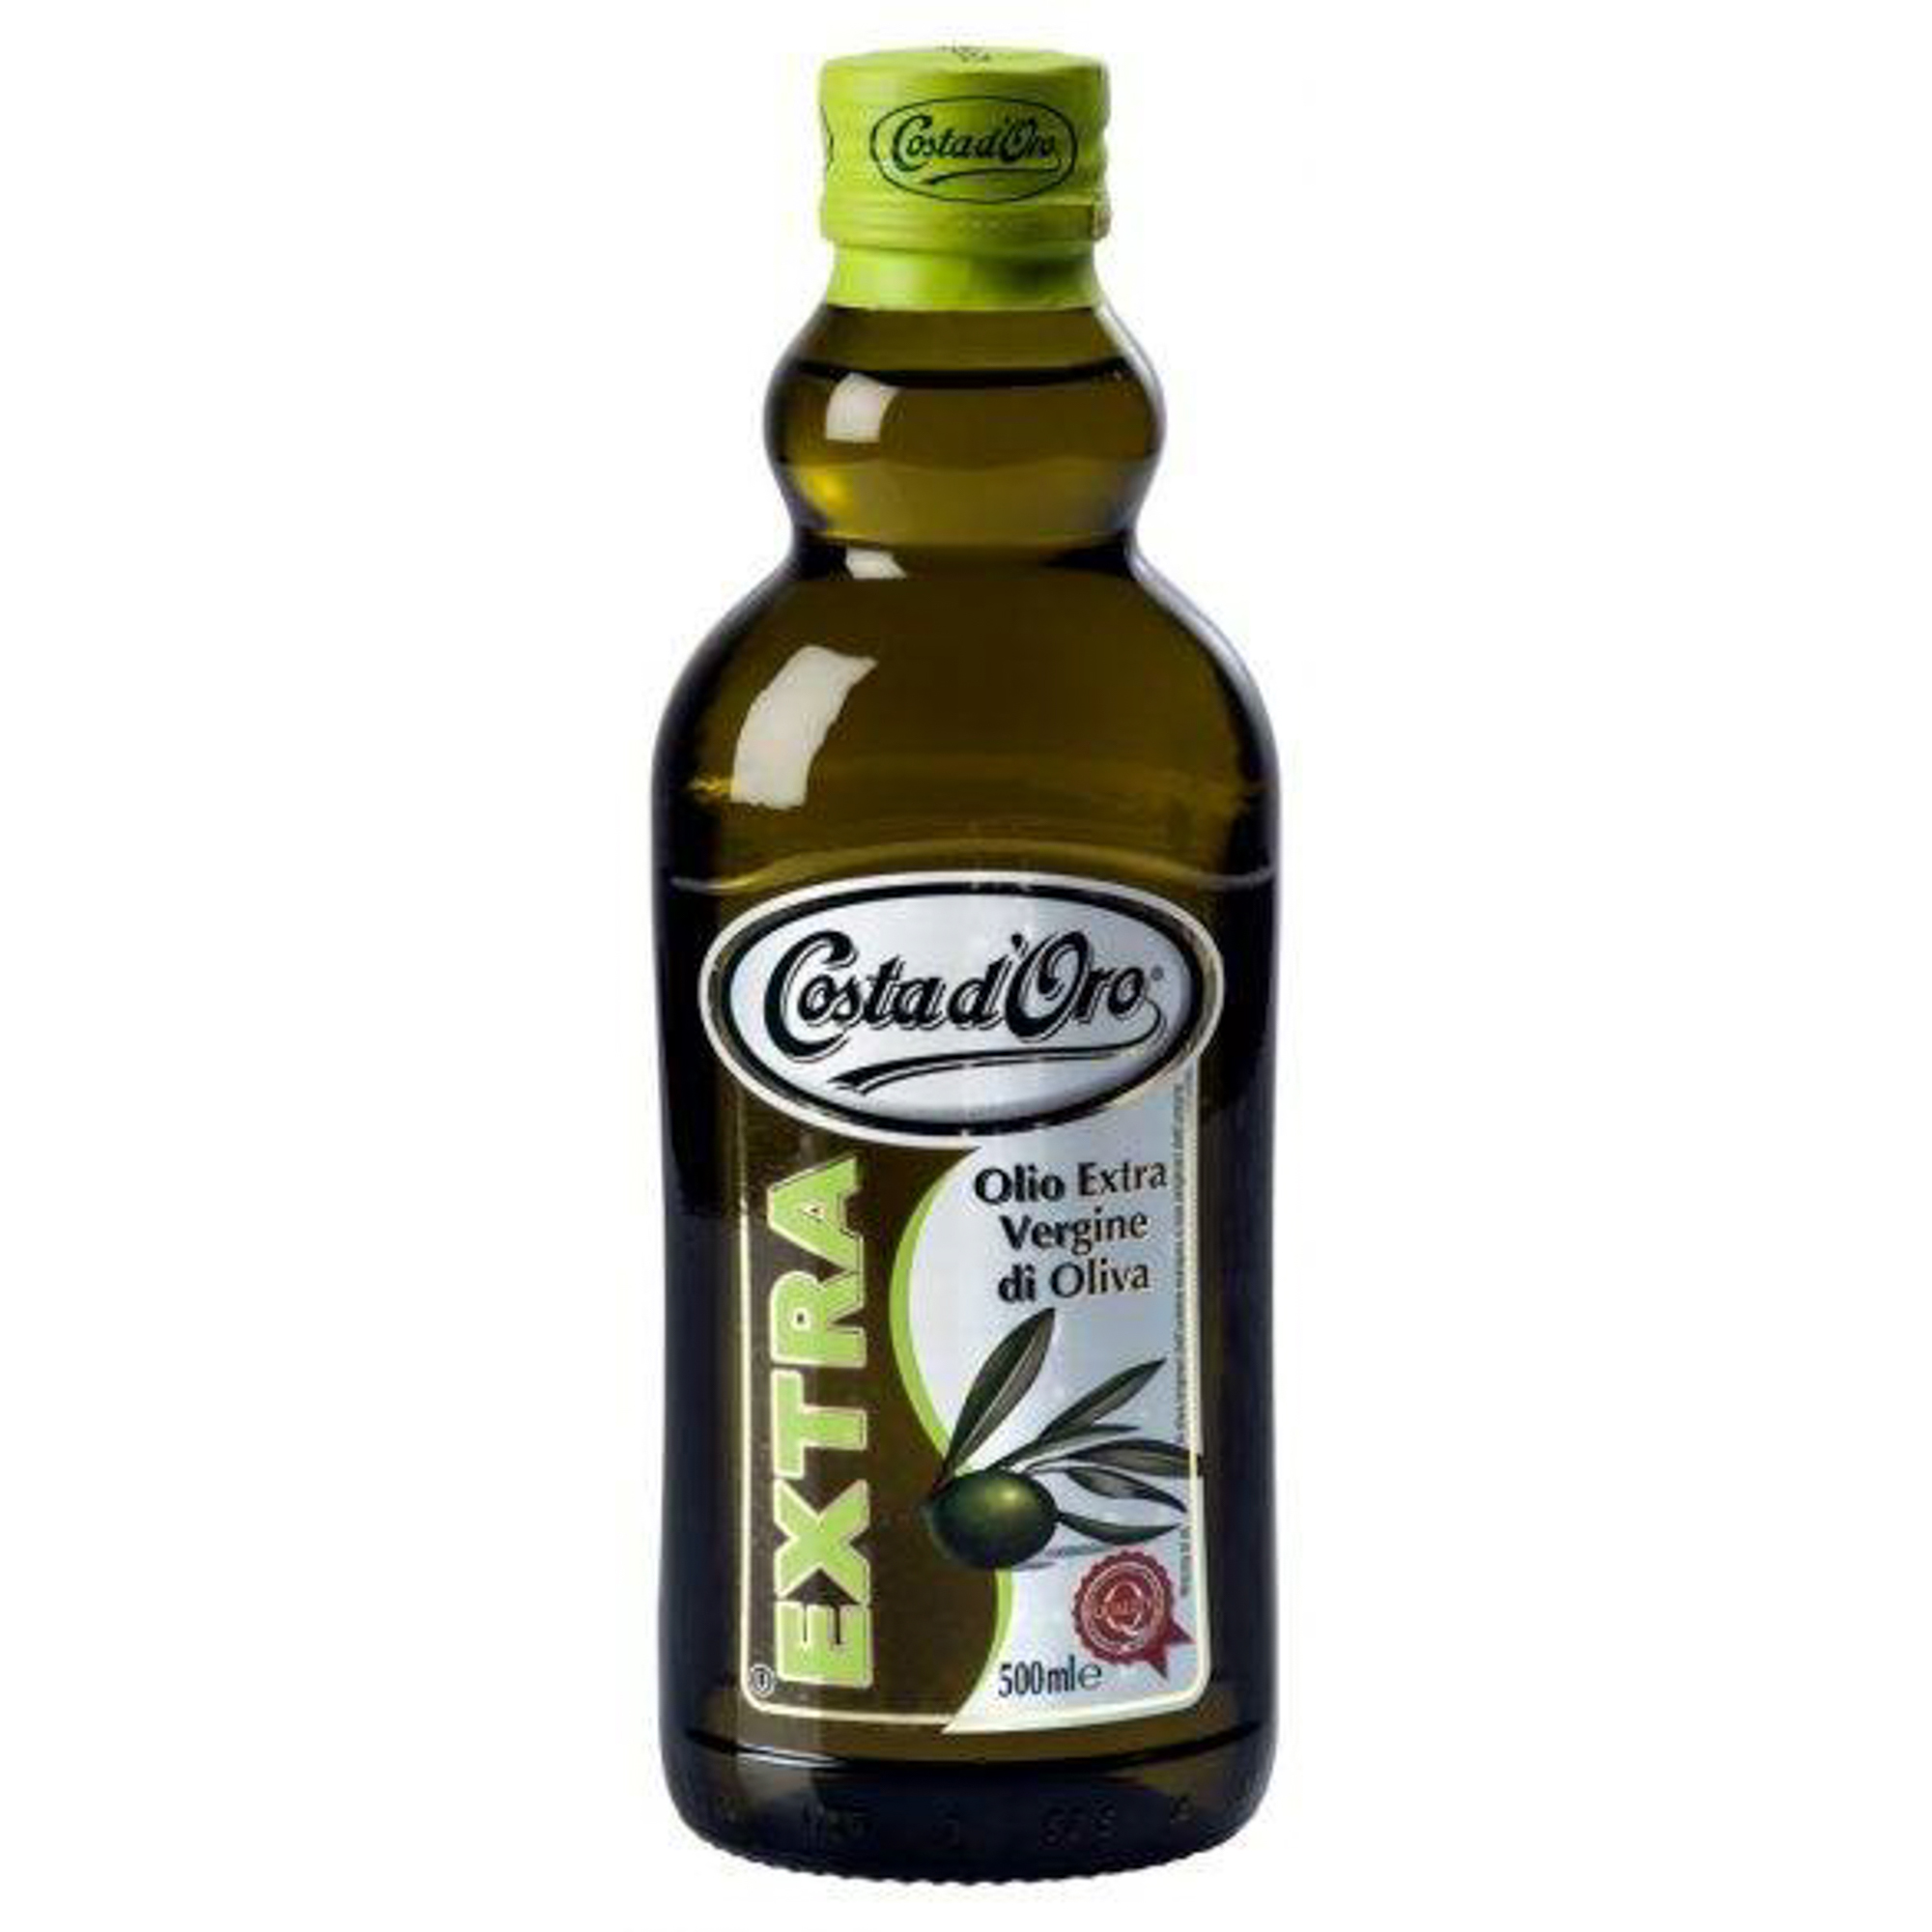 Оливковое масло для салатов нерафинированное. Costa Doro оливковое масло. Масло оливковое Costa d'Oro Extra, 500мл. Масло оливковое Коста доро. Costa Doro оливковое масло 5л.